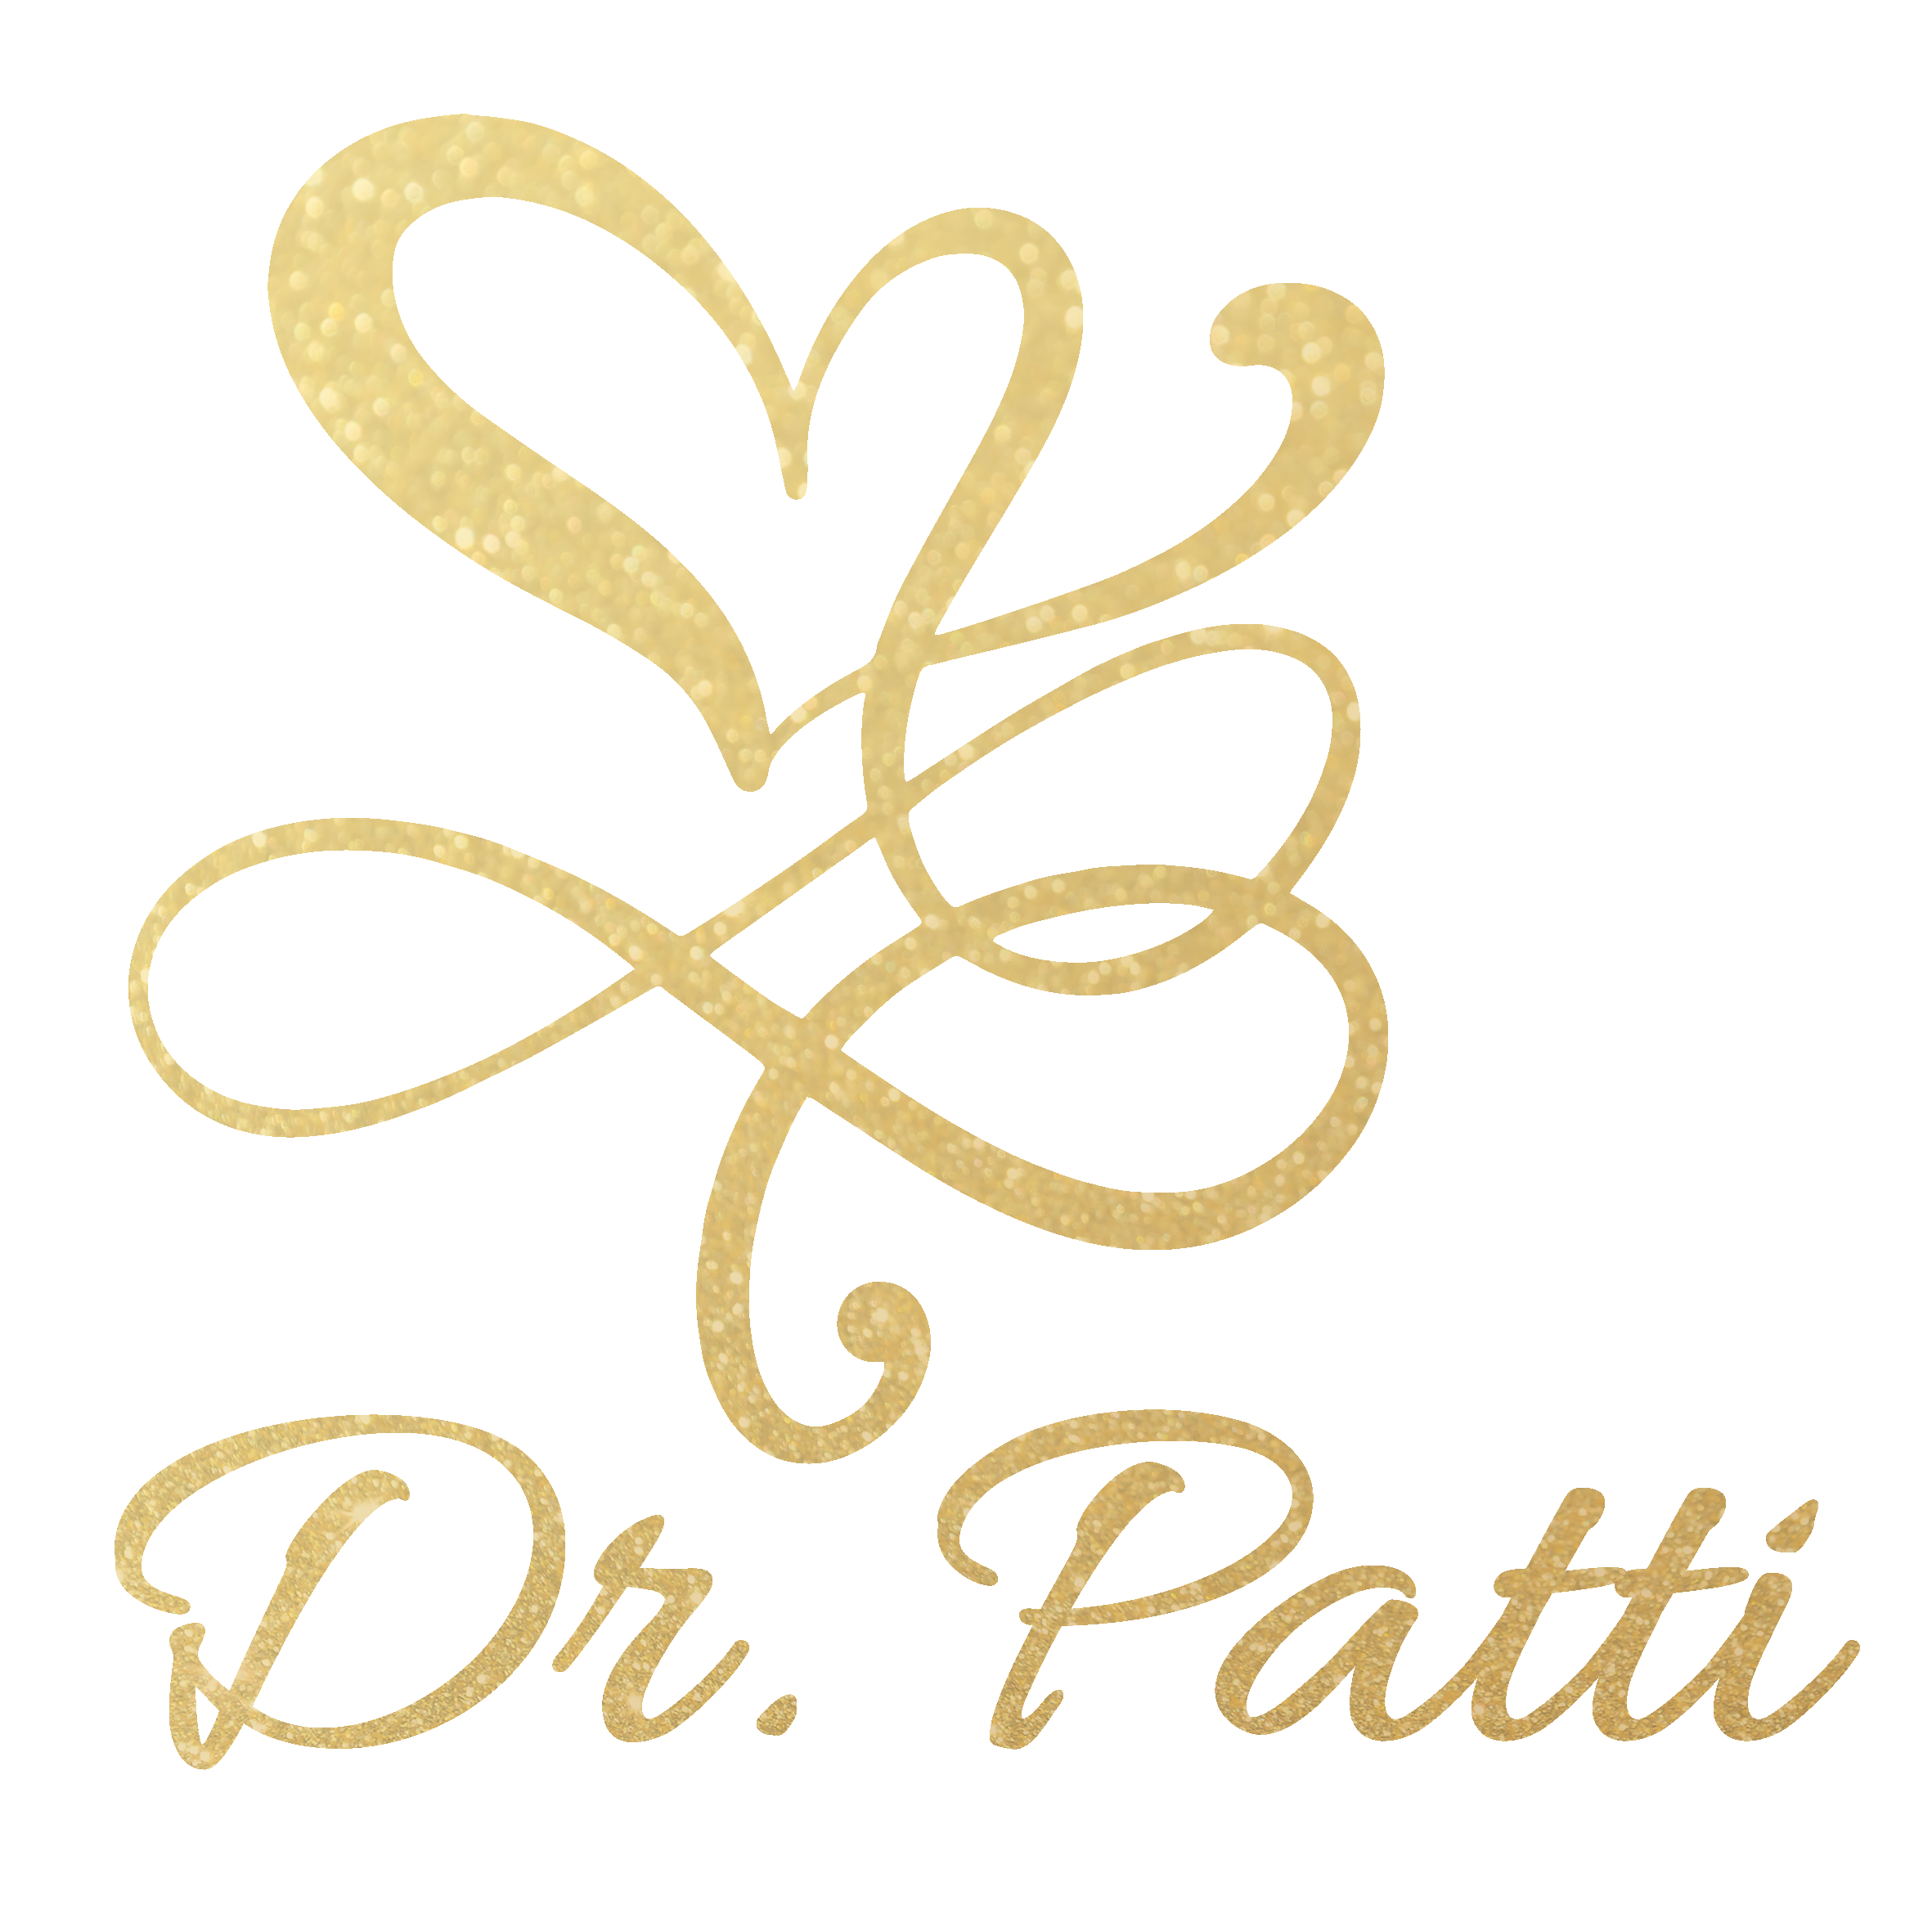 Dr Patti Britton